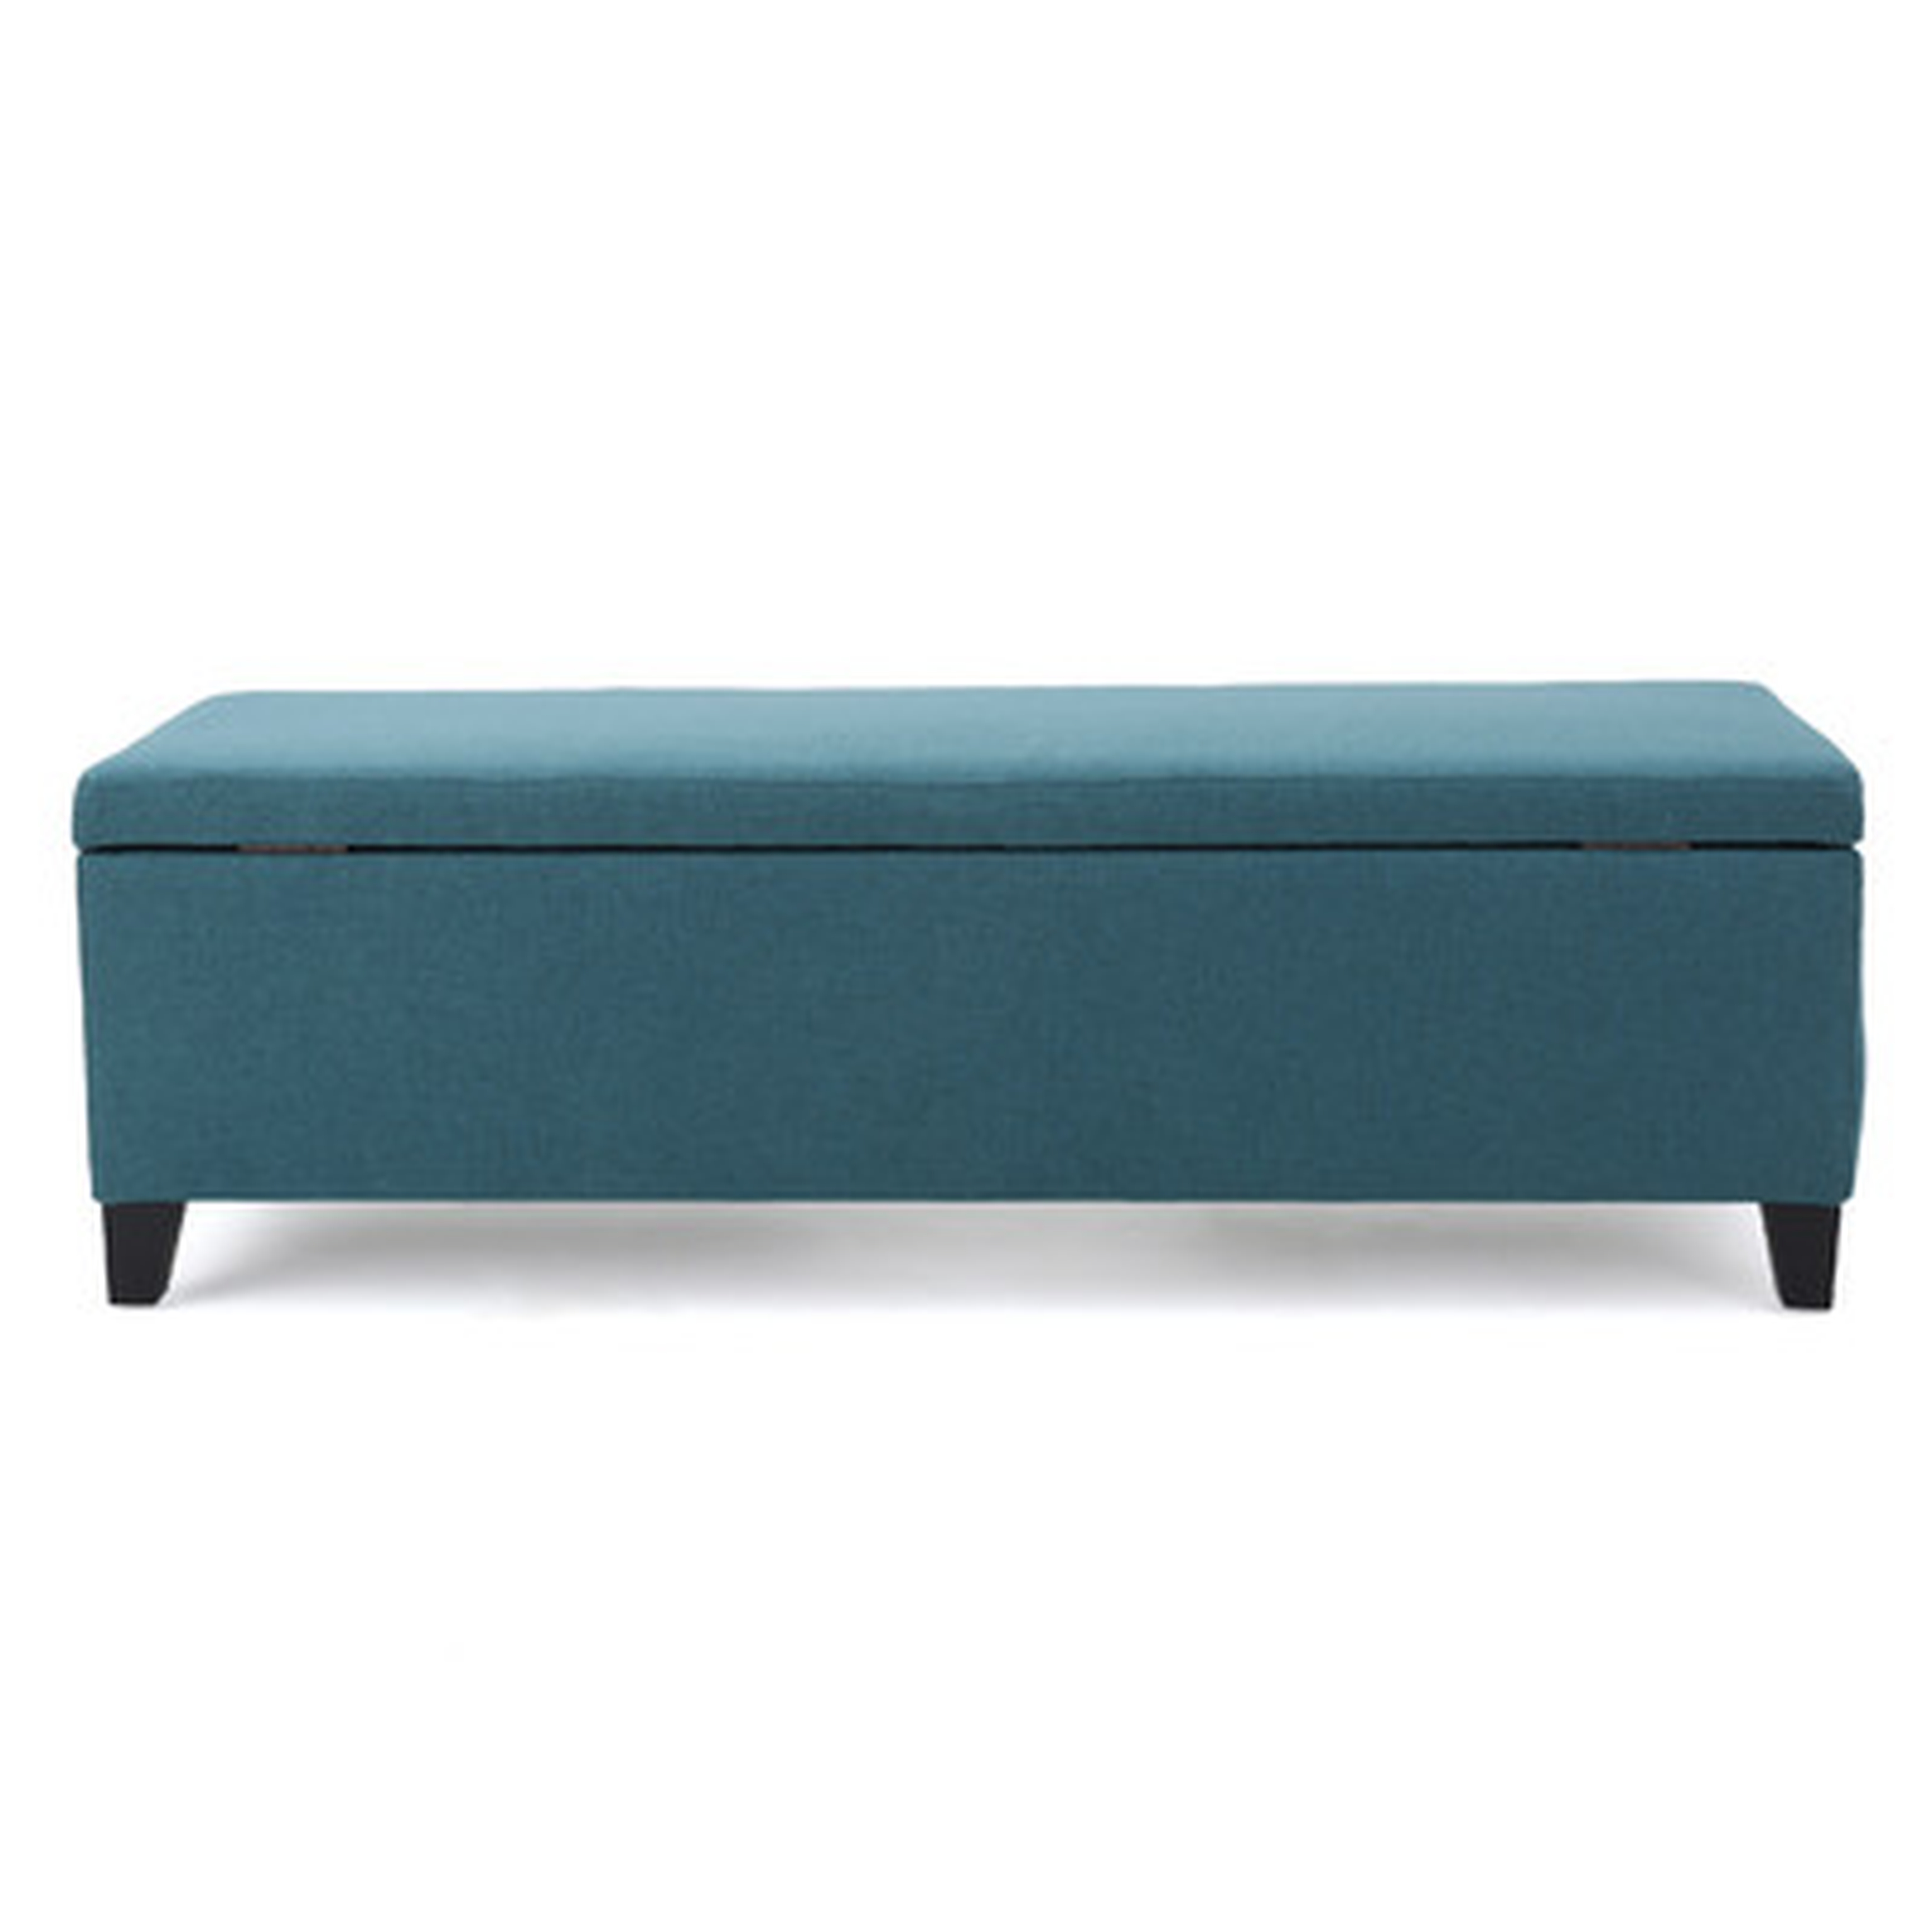 Schmit Upholstered Storage Bench - Wayfair